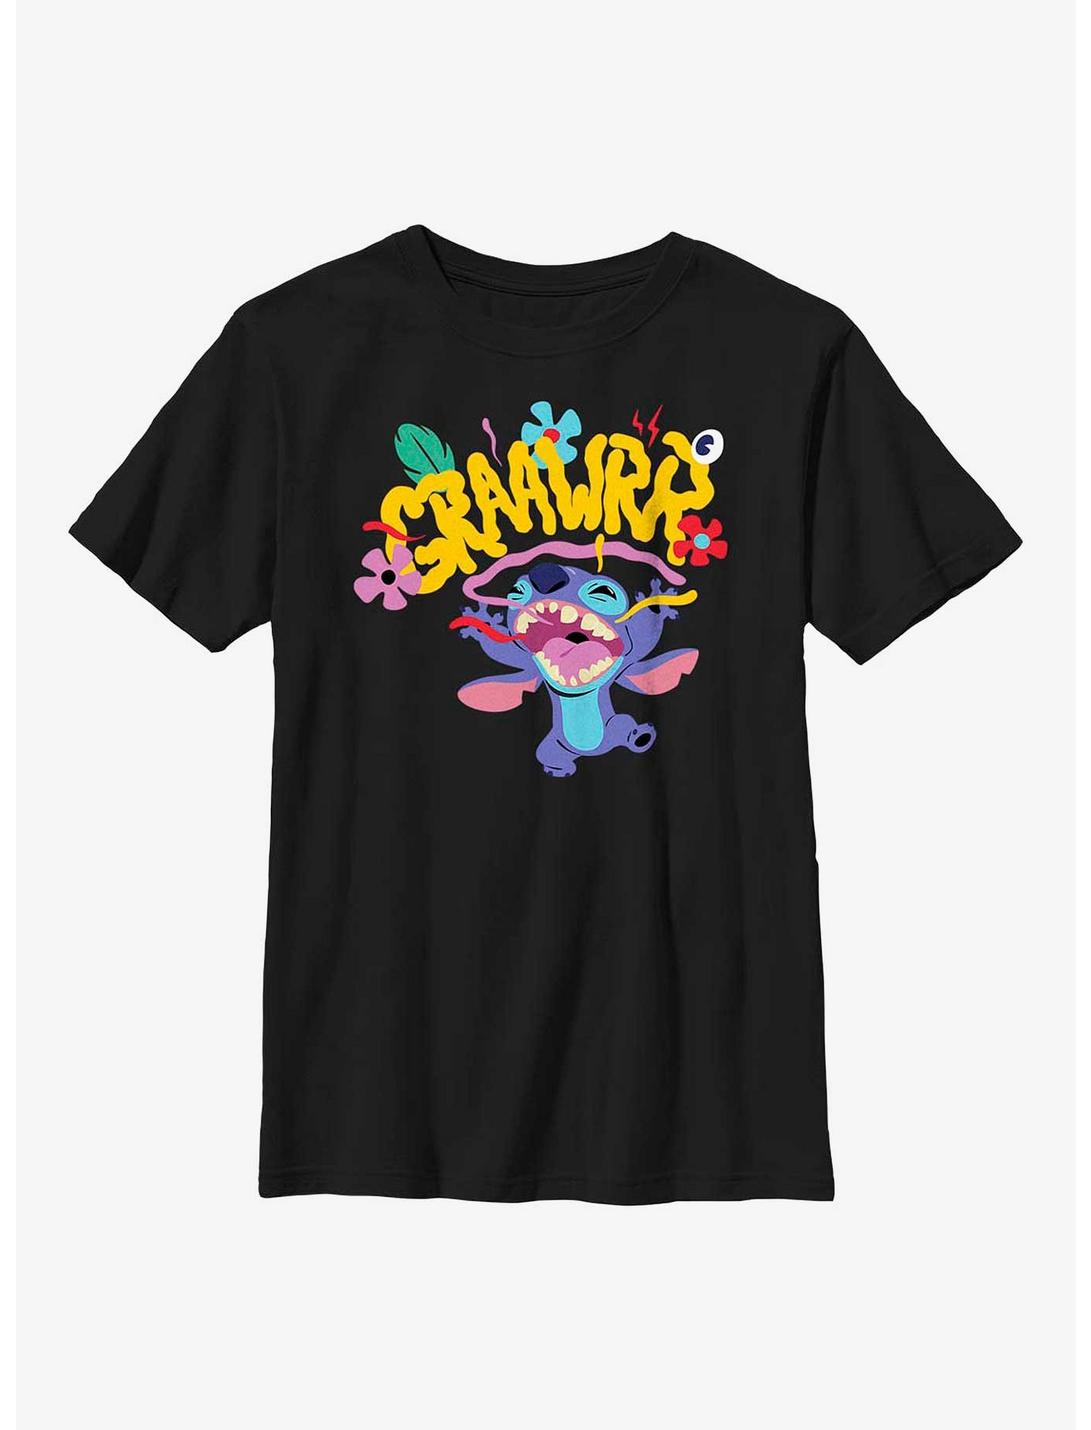 Disney Lilo & Stitch Scream Youth T-Shirt, BLACK, hi-res